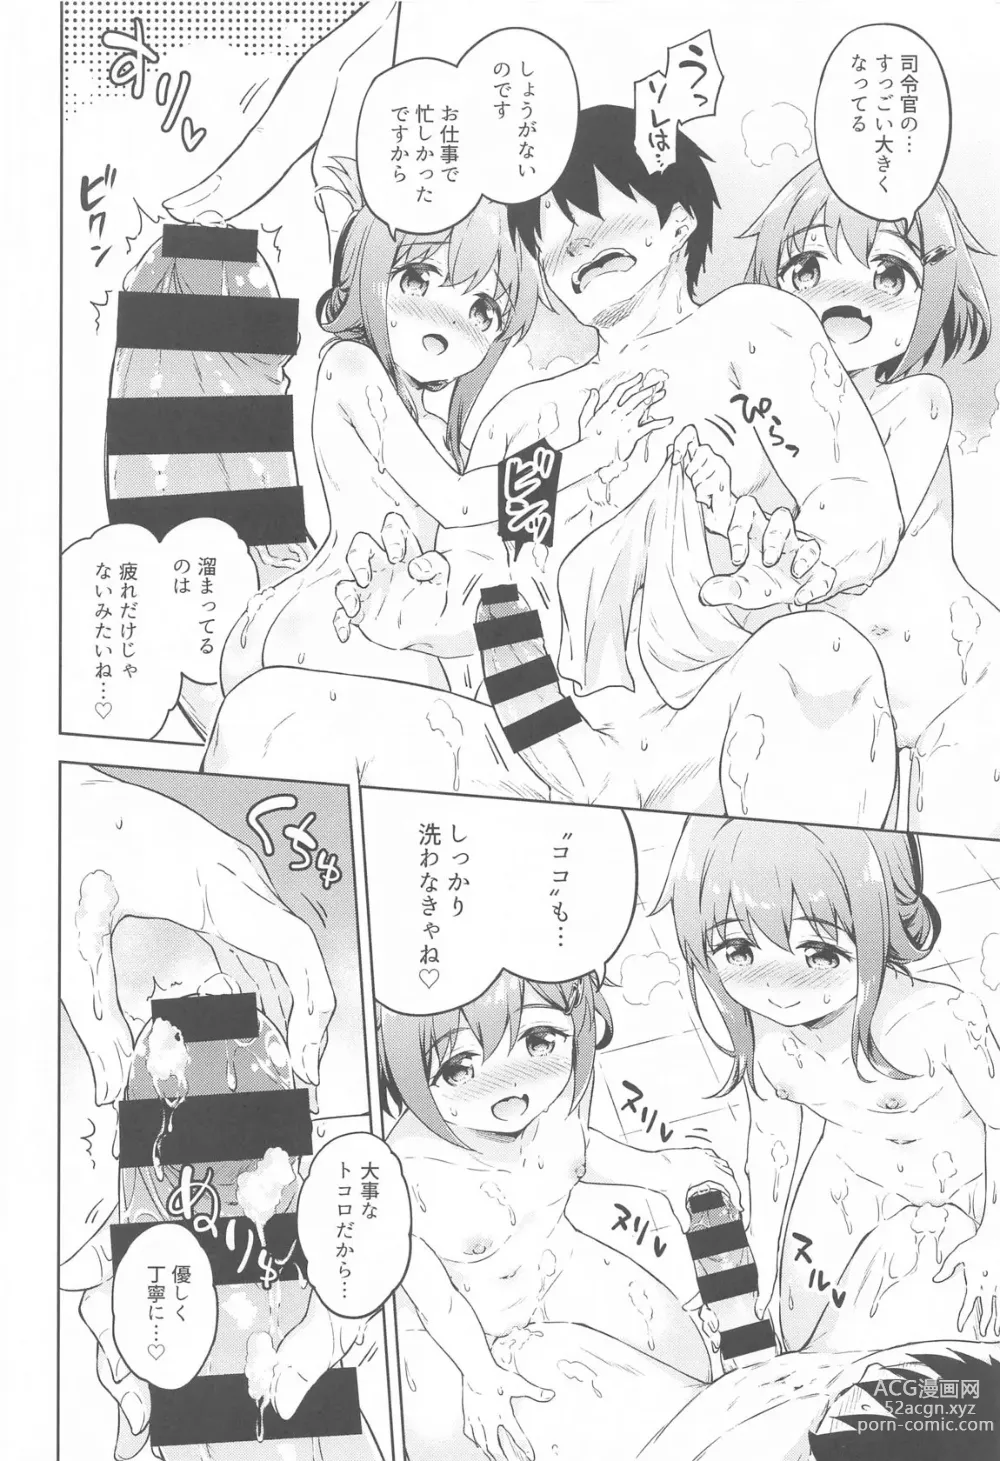 Page 9 of doujinshi Dairoku Refle Ikazuchi Inazuma Awaawa Bath Time